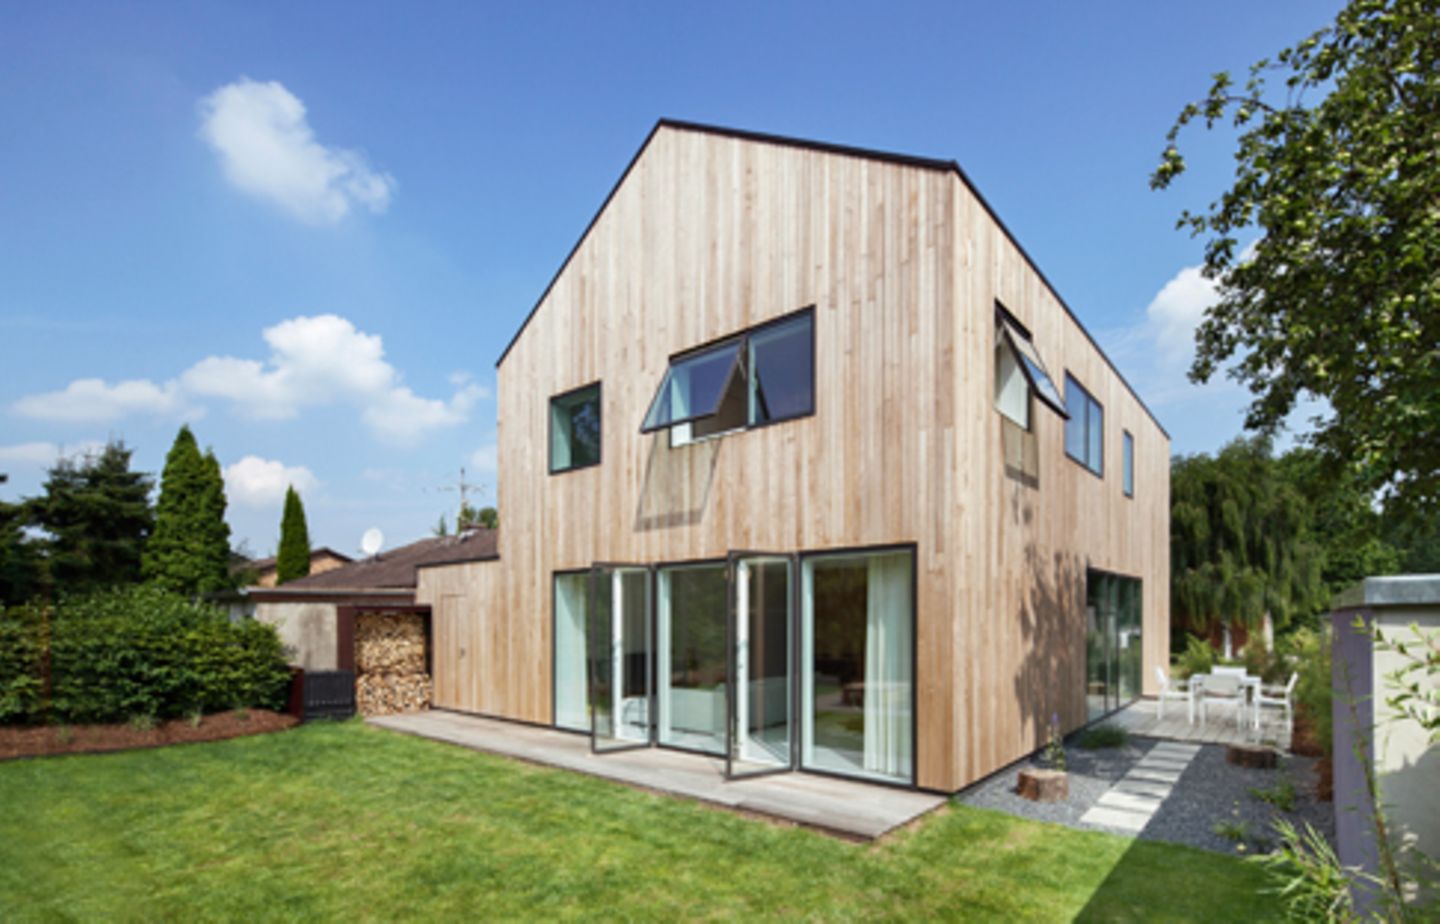 Haus A in Dortmund: Mit reduzierter Formsprache und bündigen Fenstern konzentriert sich der preisgekrönte Holzbau auf das Wesentliche.